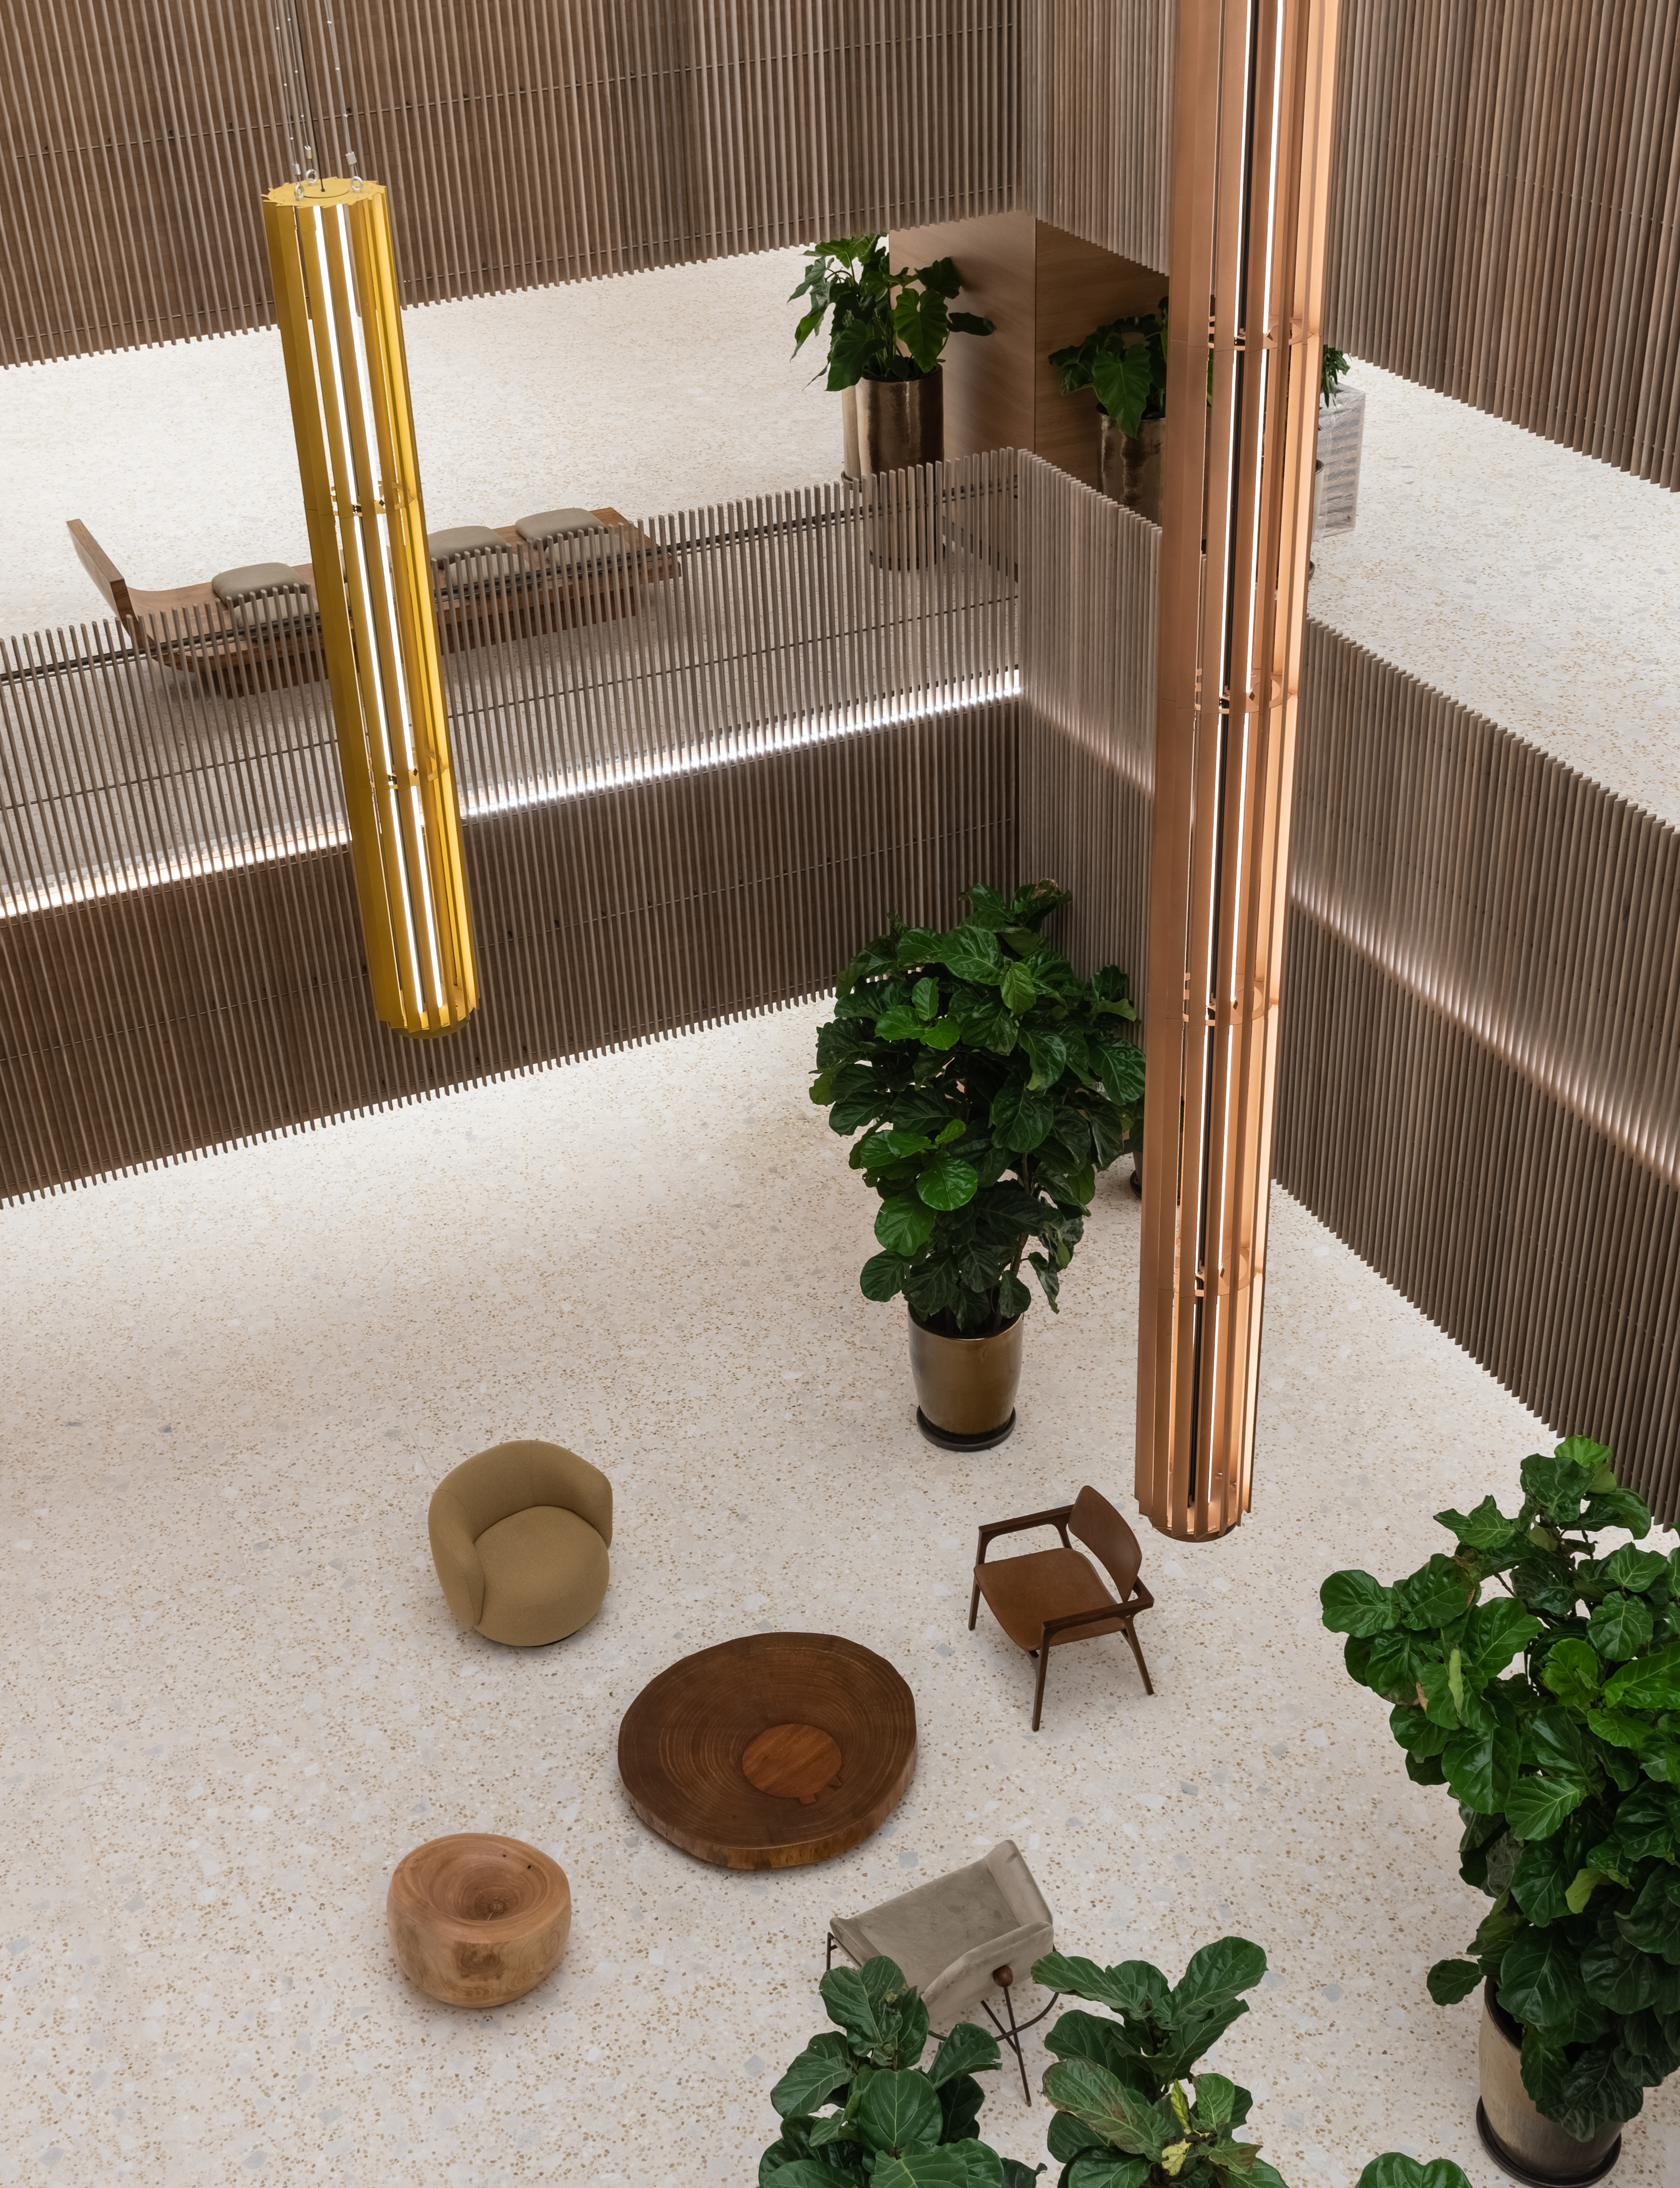 La foto de arriba muestra un espacio claro con tonos de madera en un centro comercial.  Cabe ver butacas en color madera y dos plantas.